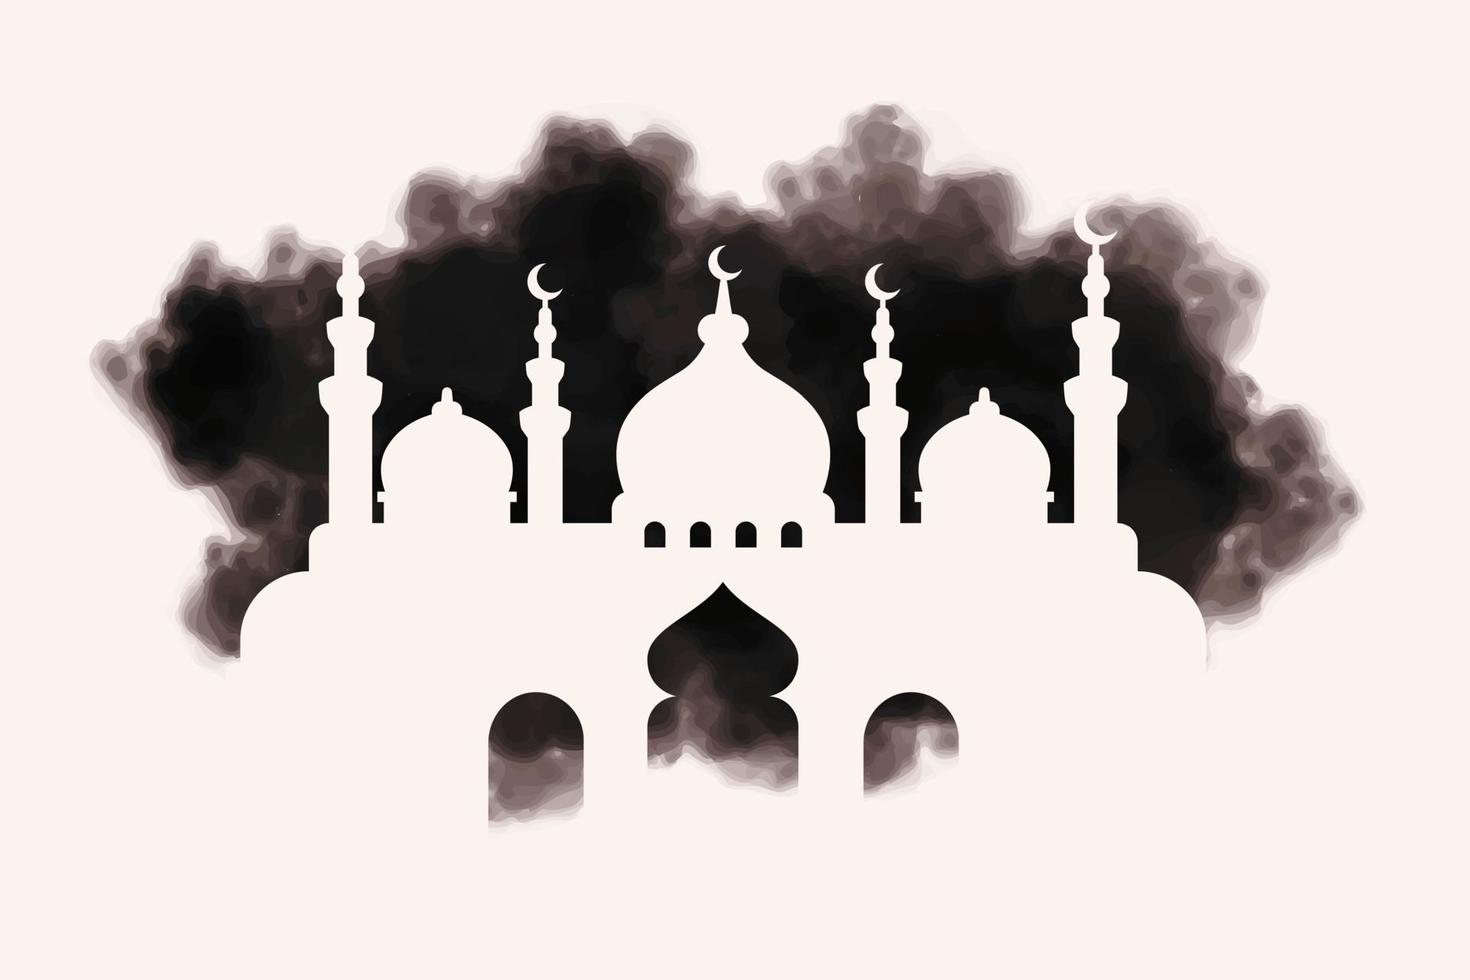 abstrakter stil der islamischen vektorillustration mit moscheenschattenbild auf spritztinte vektor